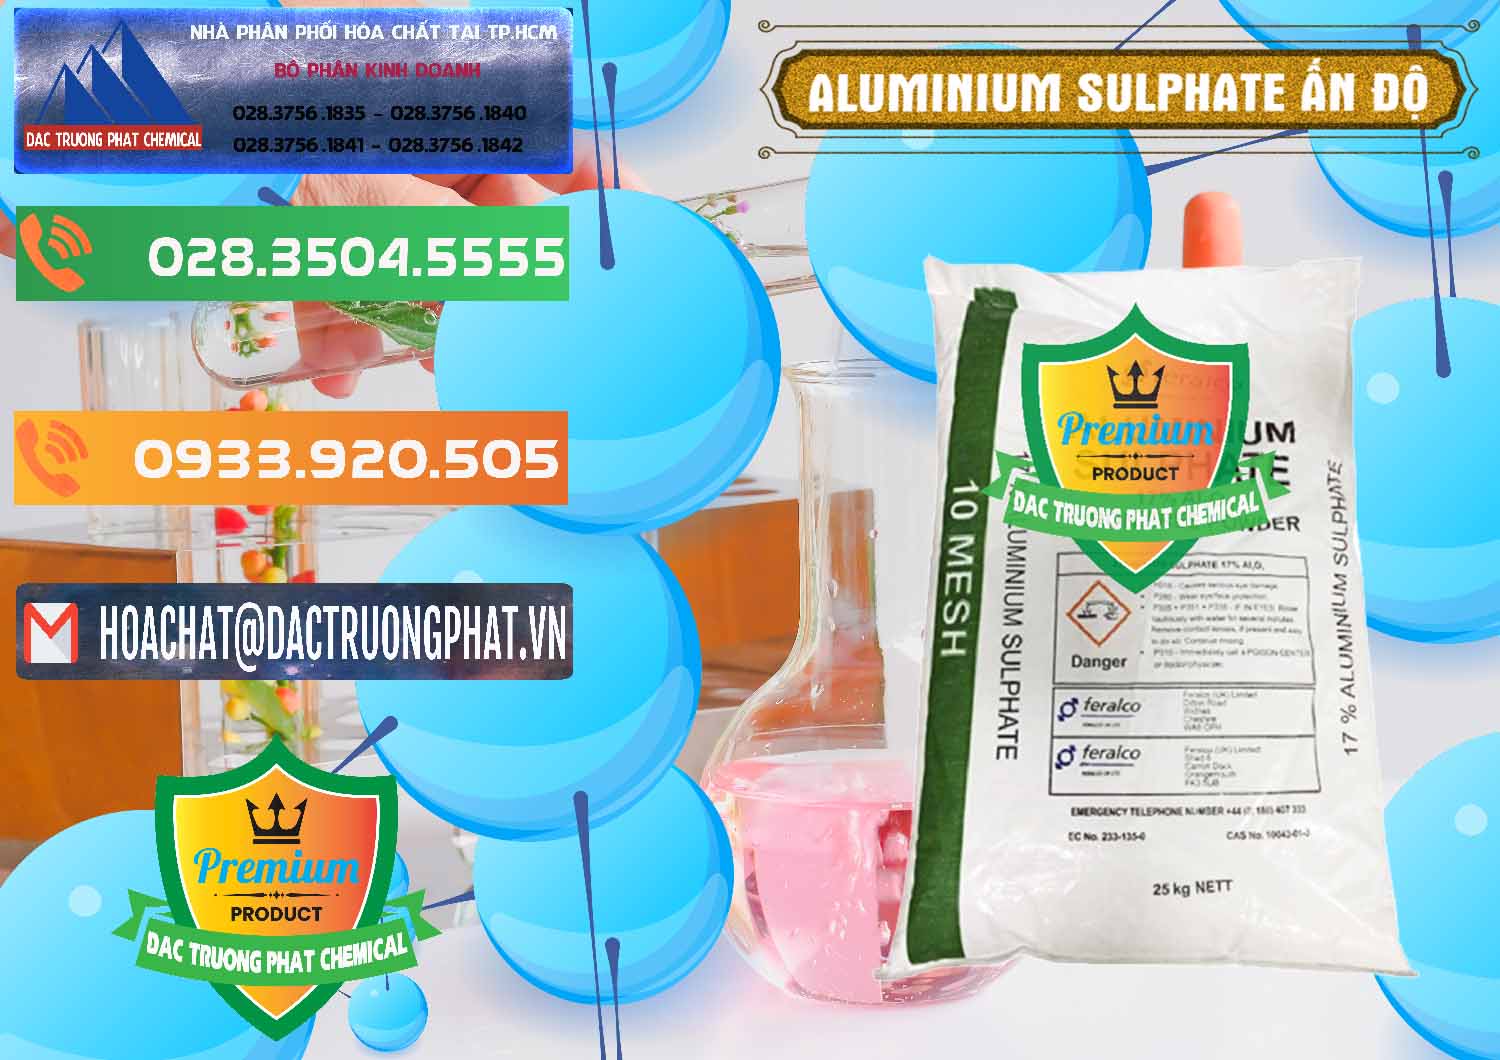 Công ty chuyên bán và phân phối Phèn Nhôm - Al2(SO4)3 17% Ấn Độ India - 0463 - Bán & phân phối hóa chất tại TP.HCM - hoachatxulynuoc.com.vn